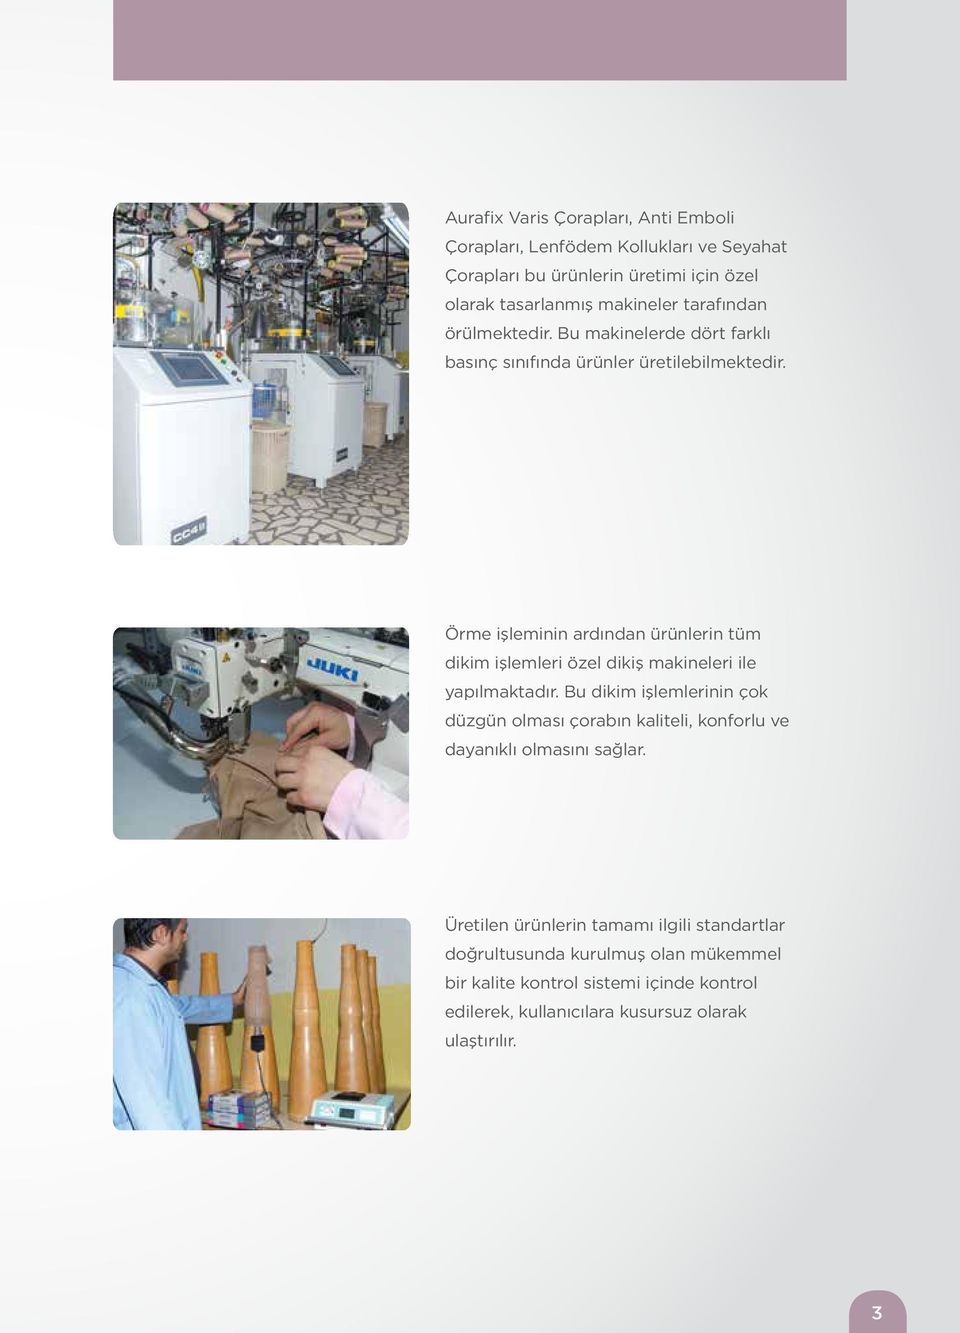 Örme işleminin ardından ürünlerin tüm dikim işlemleri özel dikiş makineleri ile yapılmaktadır.